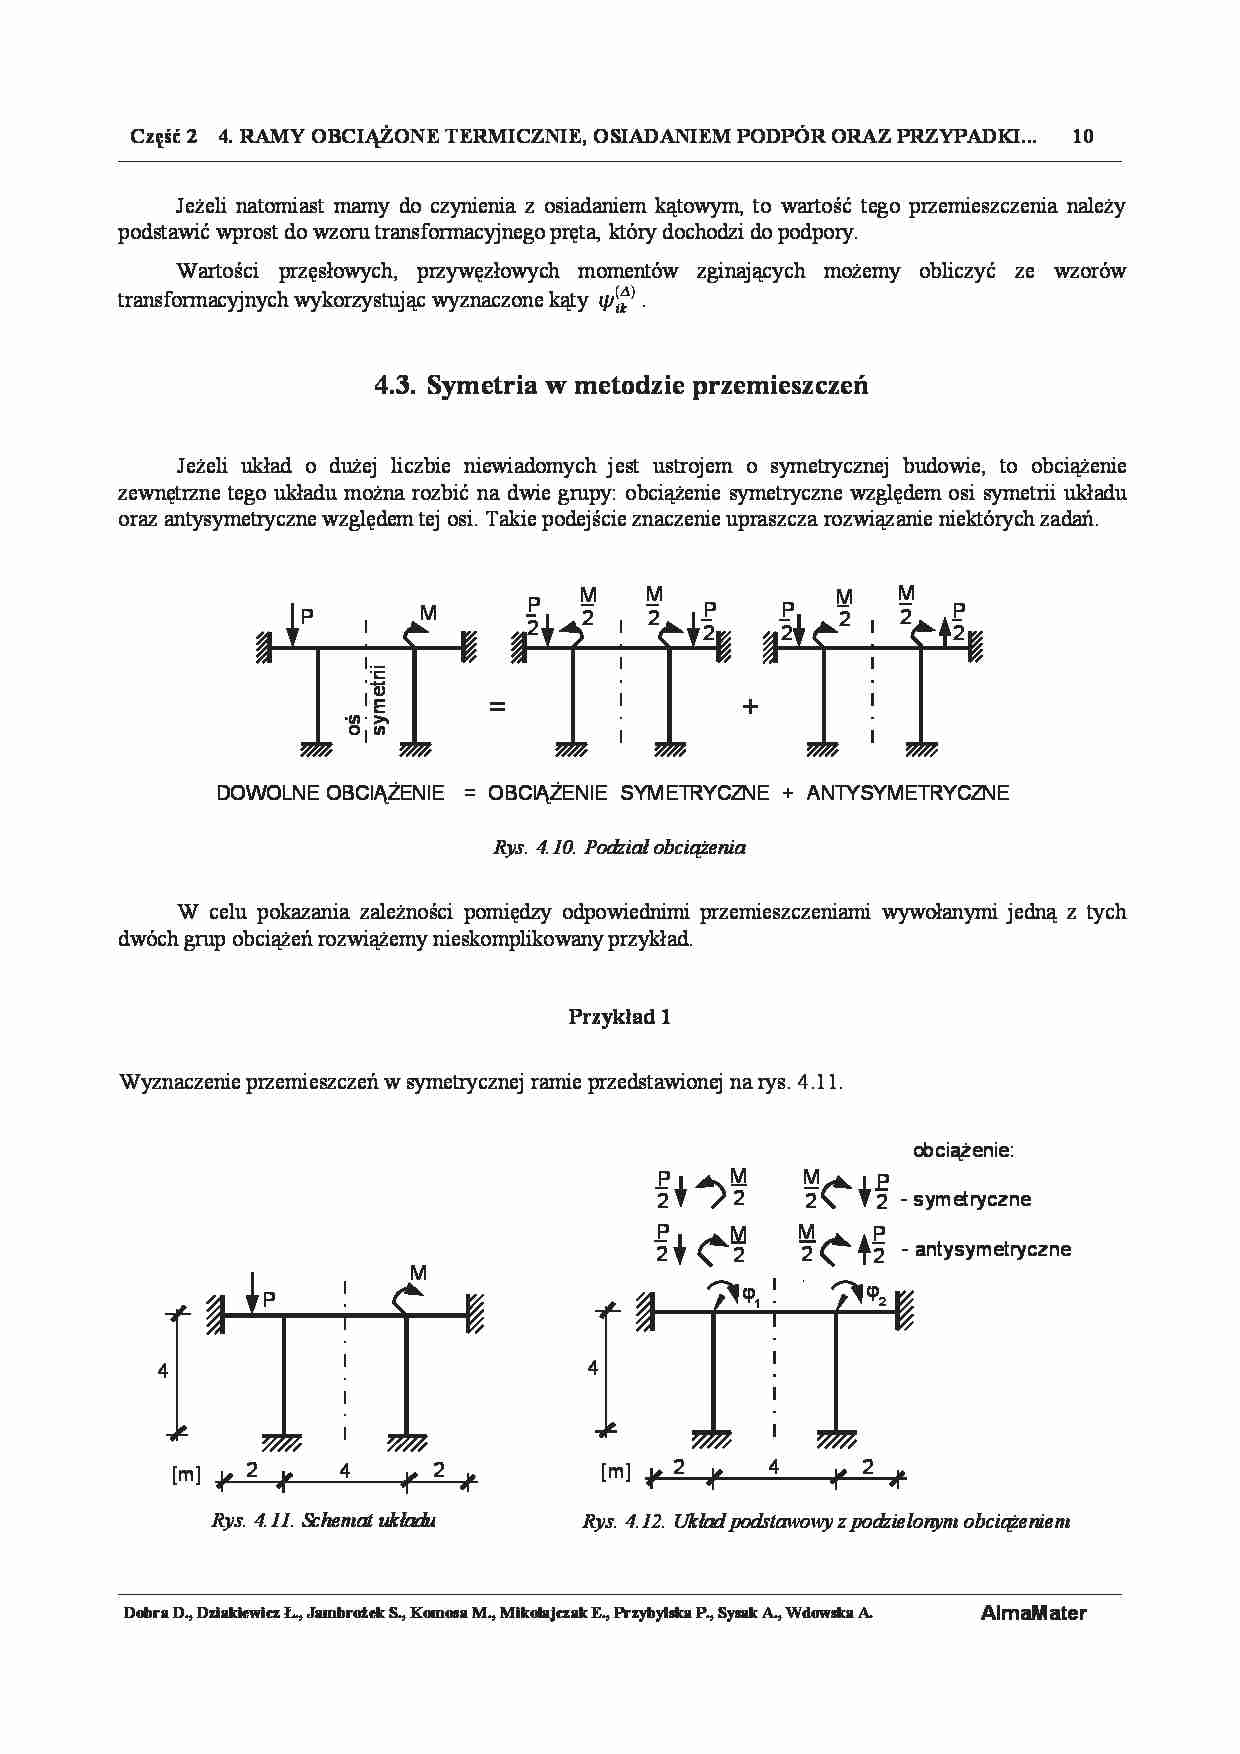 Symetria w metodzie przemieszczeń, Przykład 1 - strona 1